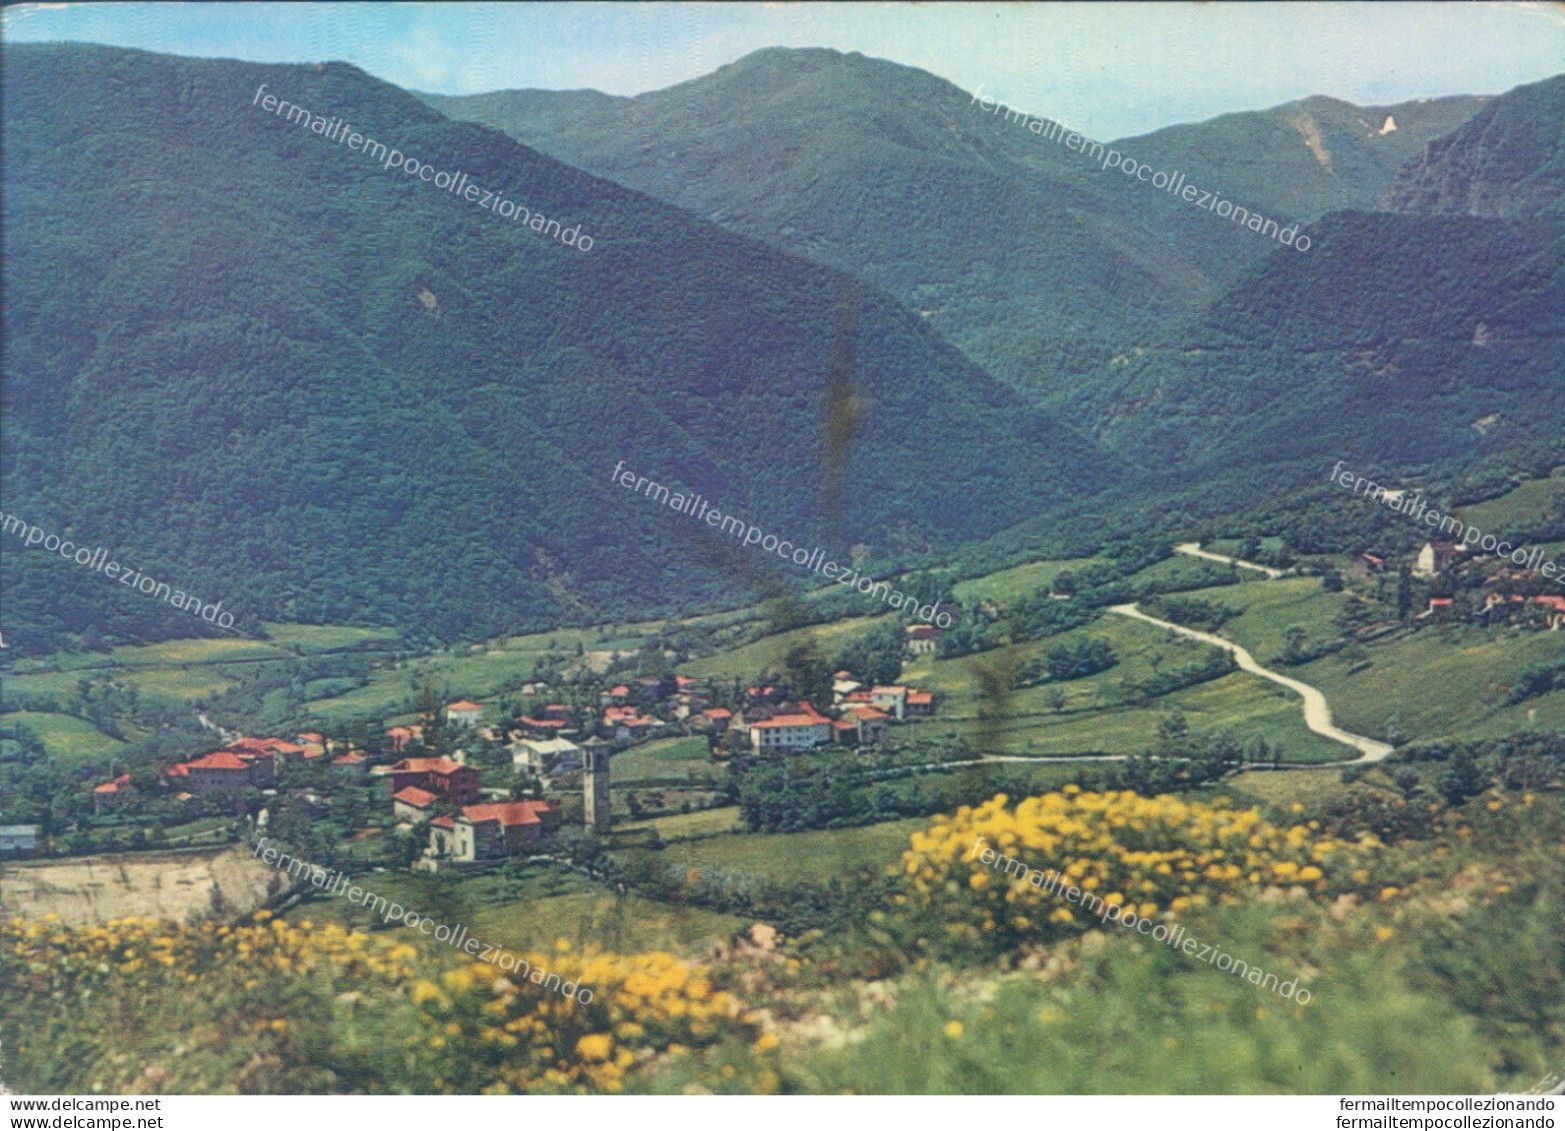 I746 Cartolina Gazzano Panorama E Val Dolo Provincia Di Reggio Emilia - Reggio Nell'Emilia